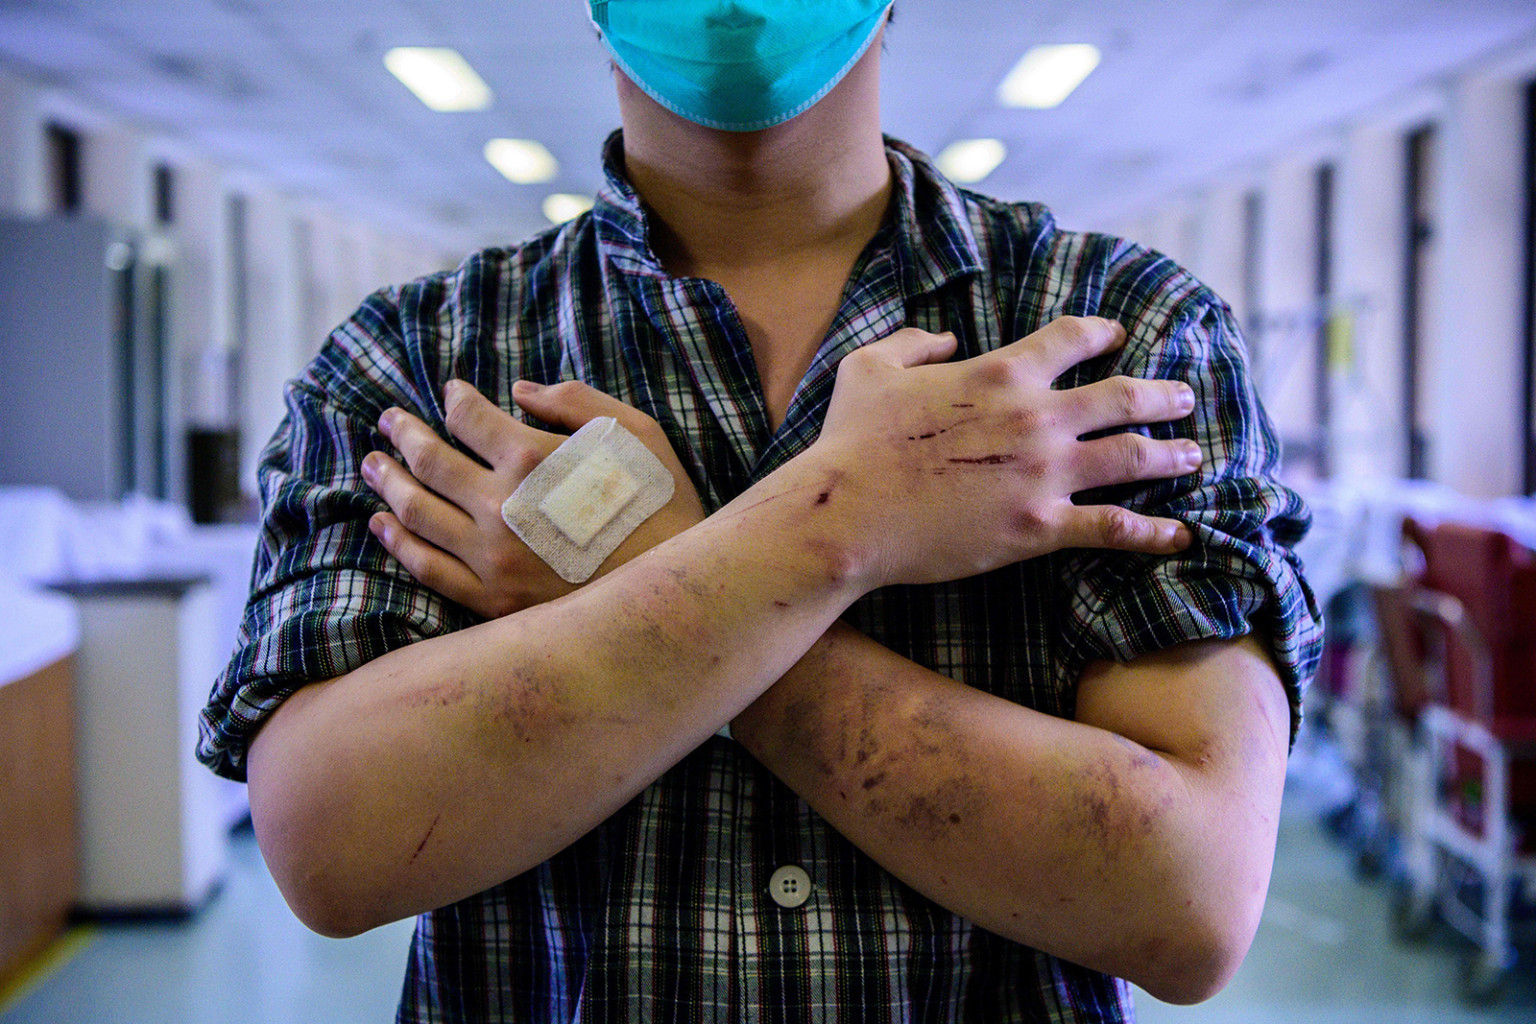 Calvin So, 23 tuổi, cư dân của thị trấn Yuen Long gần biên giới với Trung Quốc đại lục, cho thấy vết thương và vết bầm tím của anh ta ở hành lang bệnh viện ở Hồng Kông vào ngày 24 tháng 7, sau khi anh ta nói rằng anh ta bị tấn công trên đường đi làm về. các nhóm người đàn ông cũng tấn công người biểu tình trở về từ một cuộc tuần hành chống chính phủ khổng lồ vào ngày 21 tháng 7.